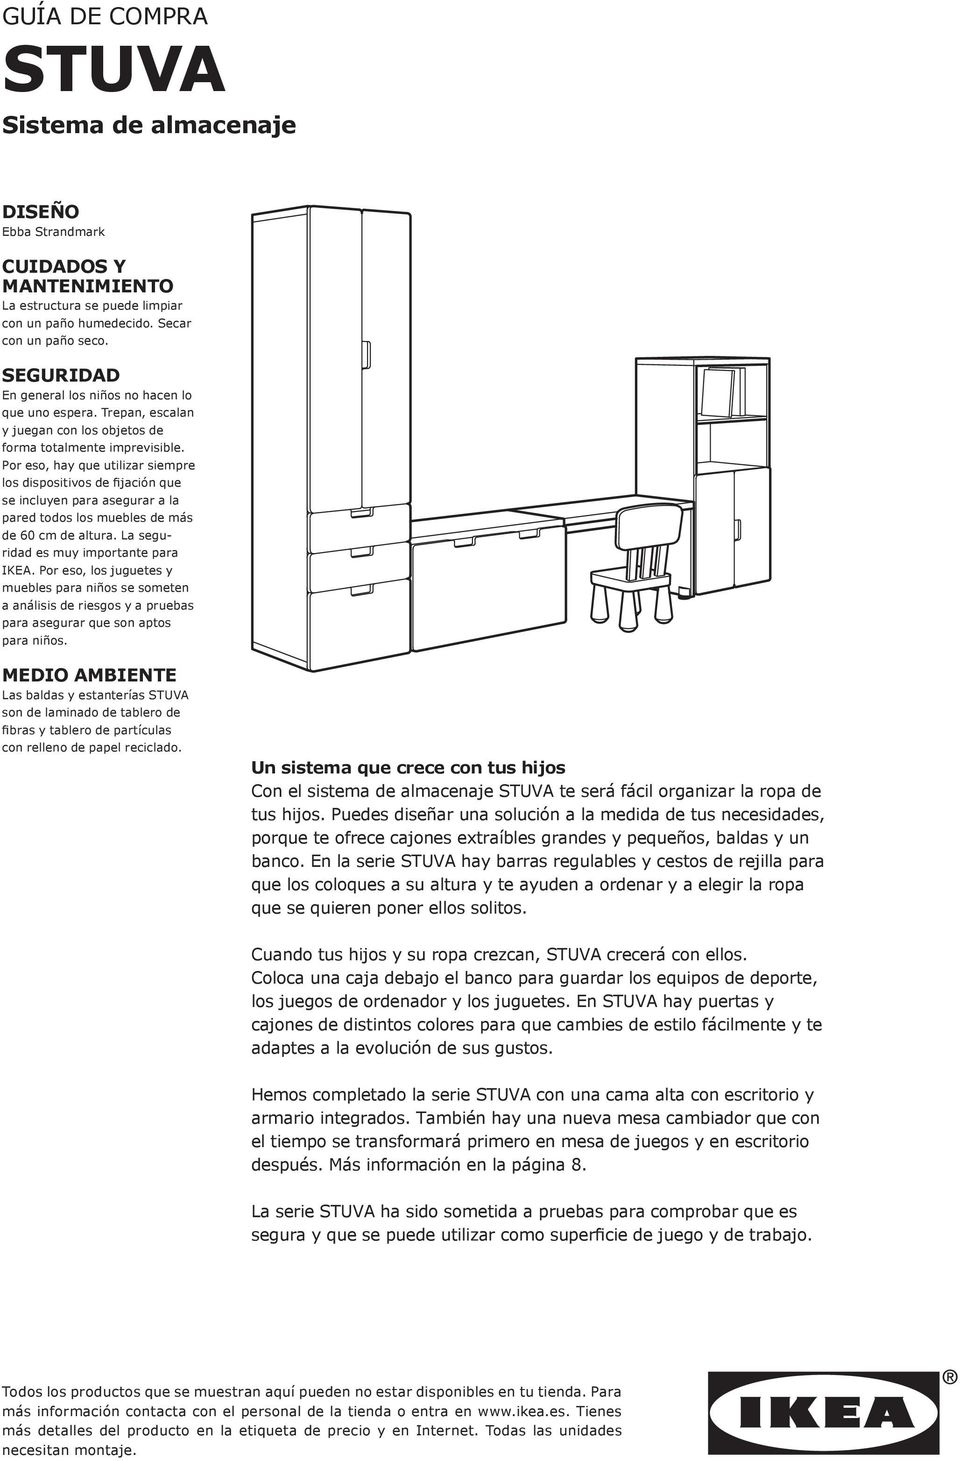 Por eso, hay que utilizar siempre los dispositivos de fijación que se incluyen para asegurar a la pared todos los muebles de más de 60 cm de altura. La seguridad es muy importante para IKEA.